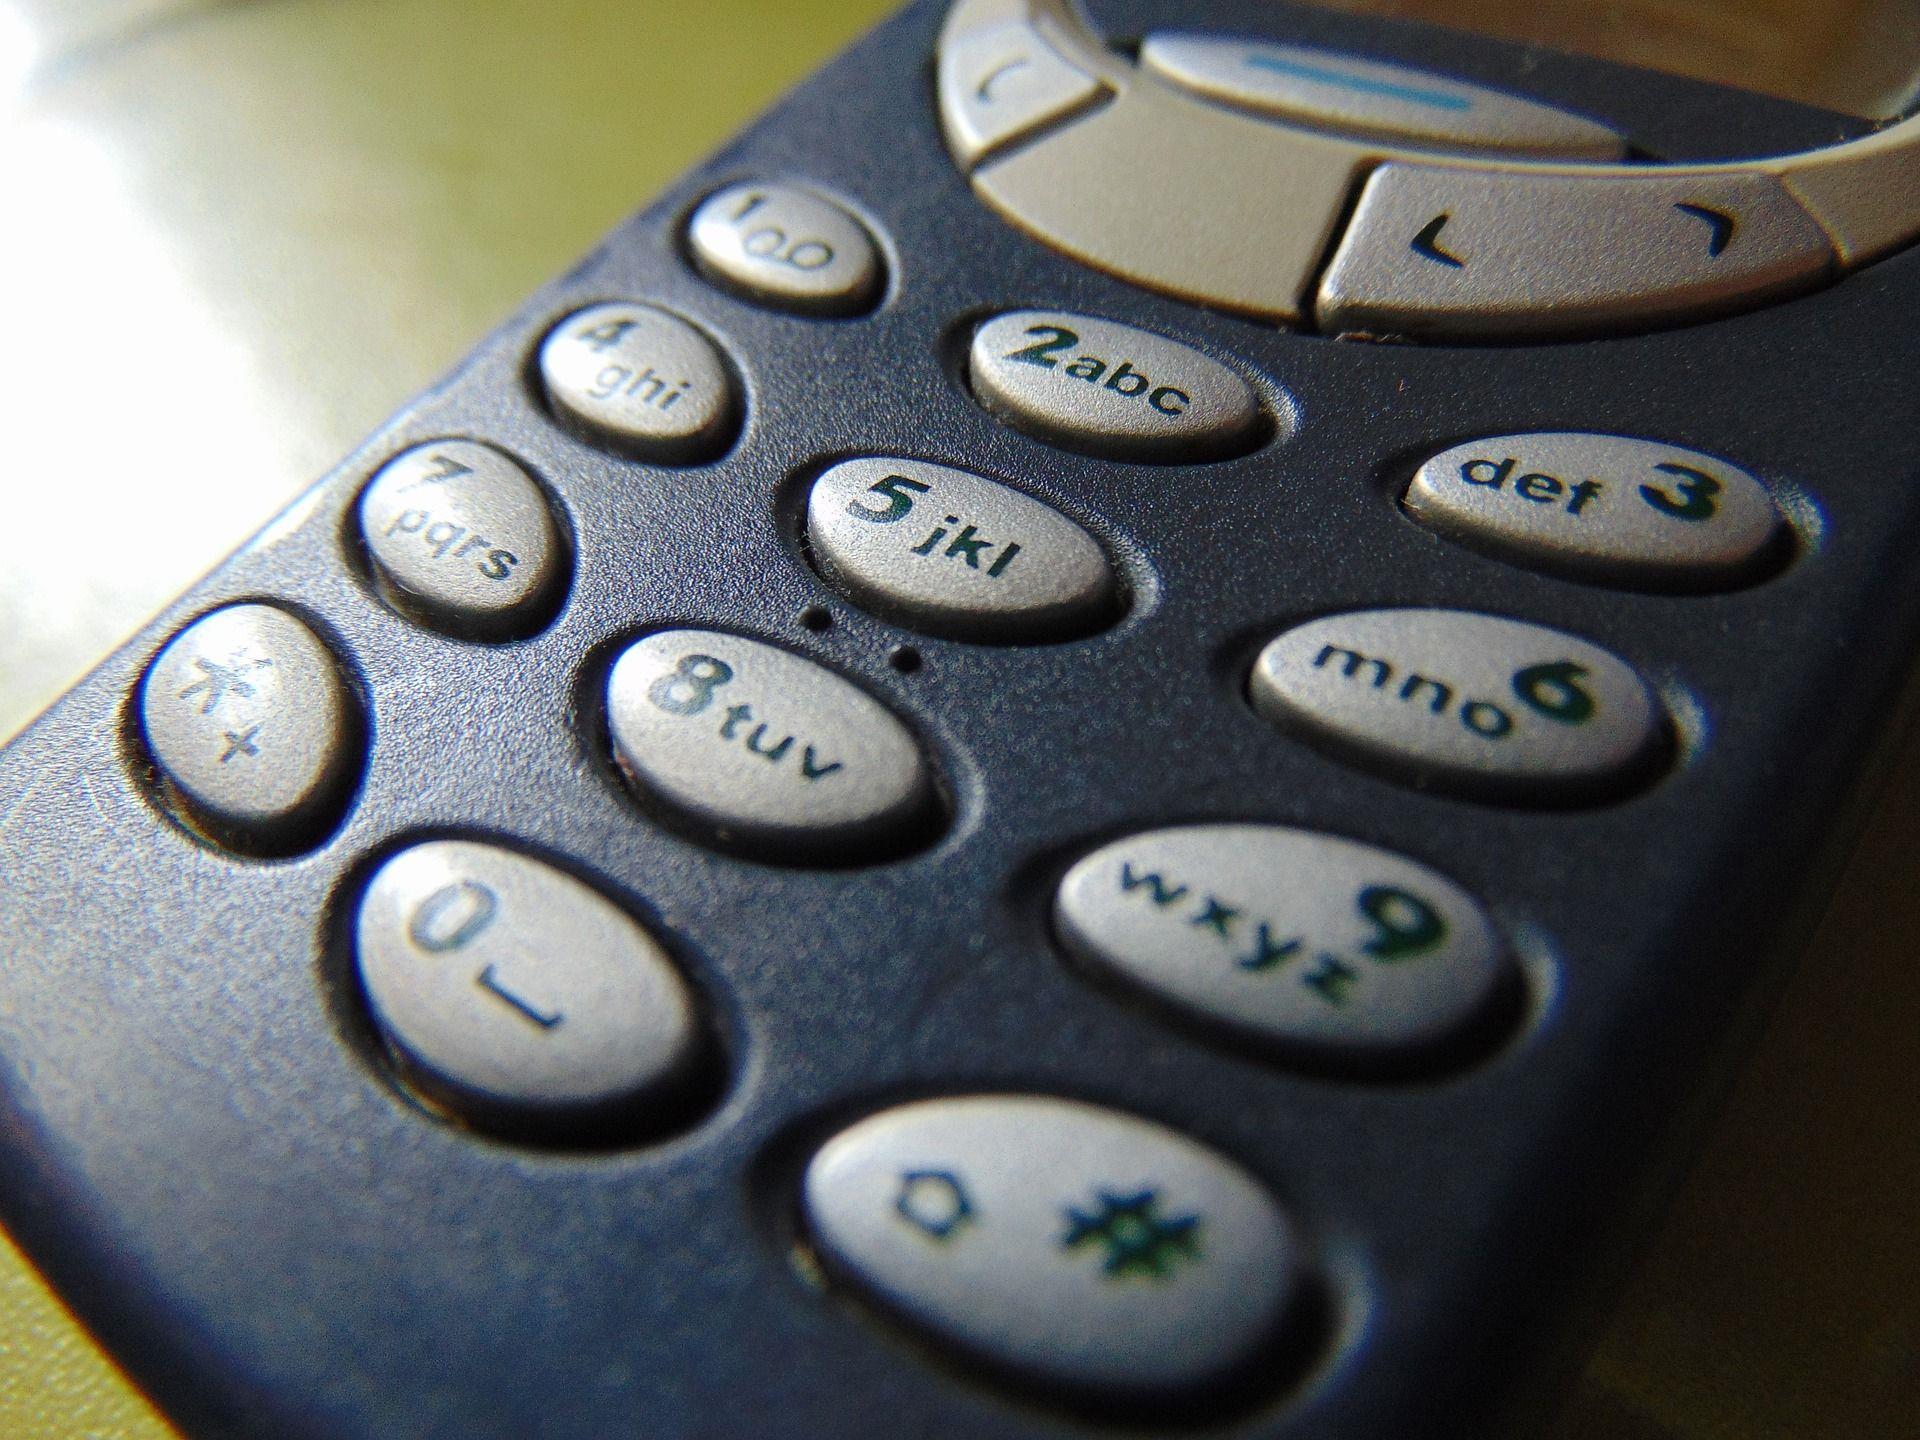 Das Nokia 3310 soll noch im Februar ein Revival erleben.